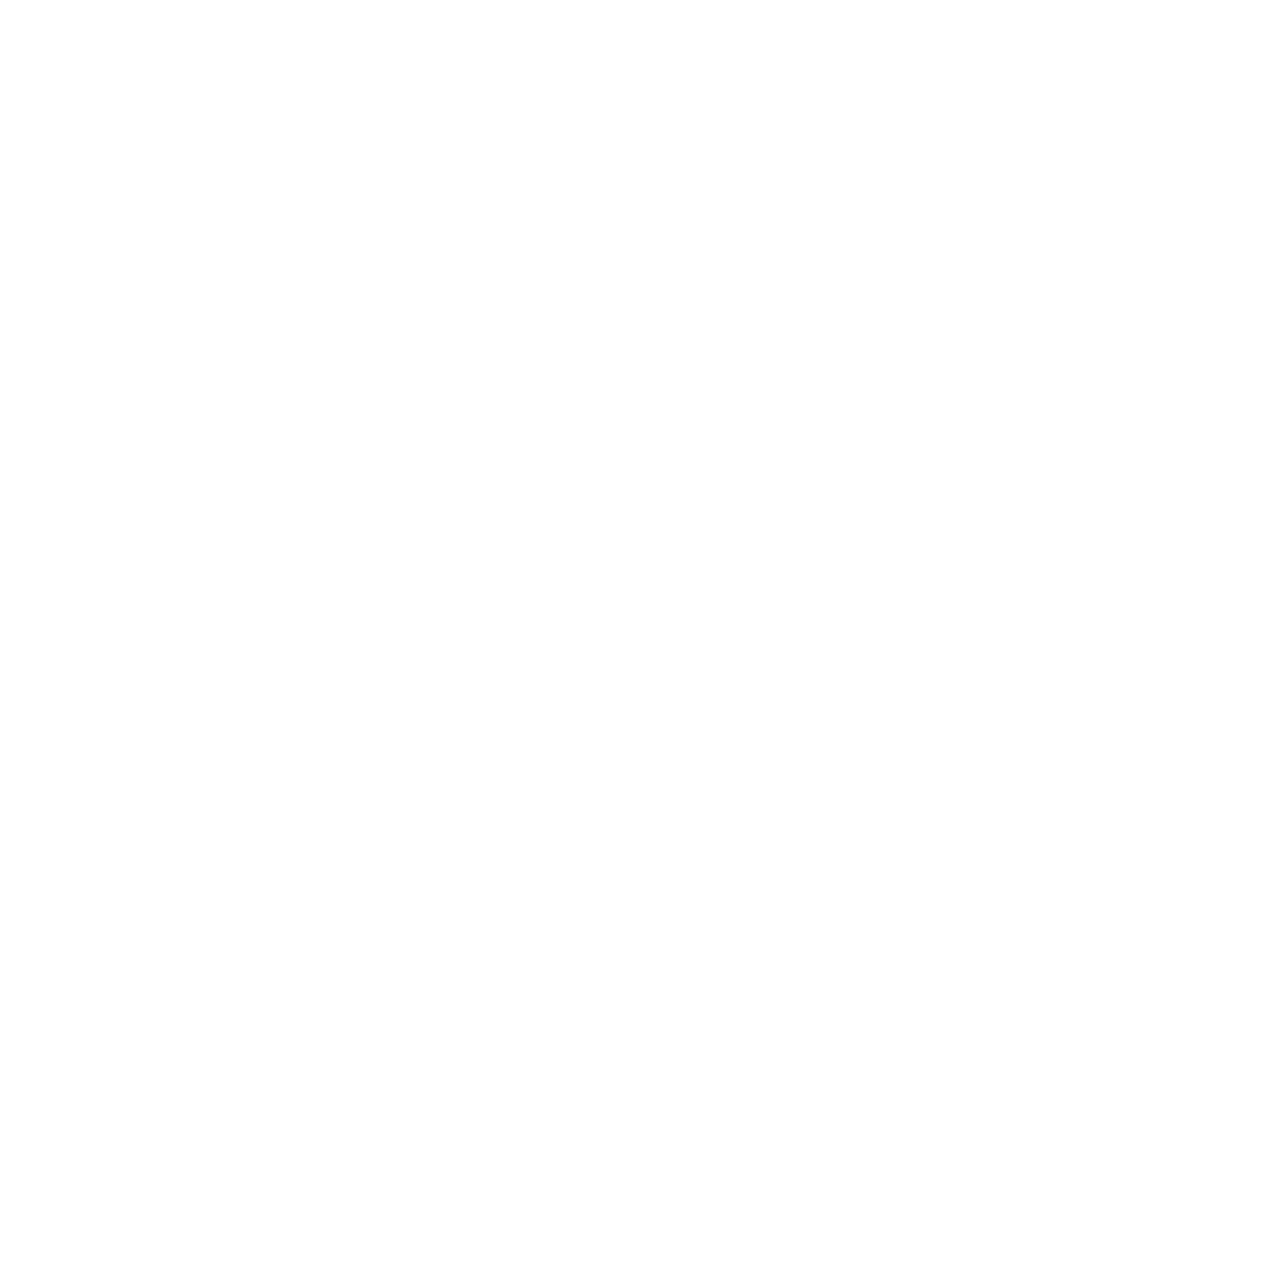 1er prix Concours de la Meilleure Baguette de Tradition Française, sur Rouen Agglomération 2018